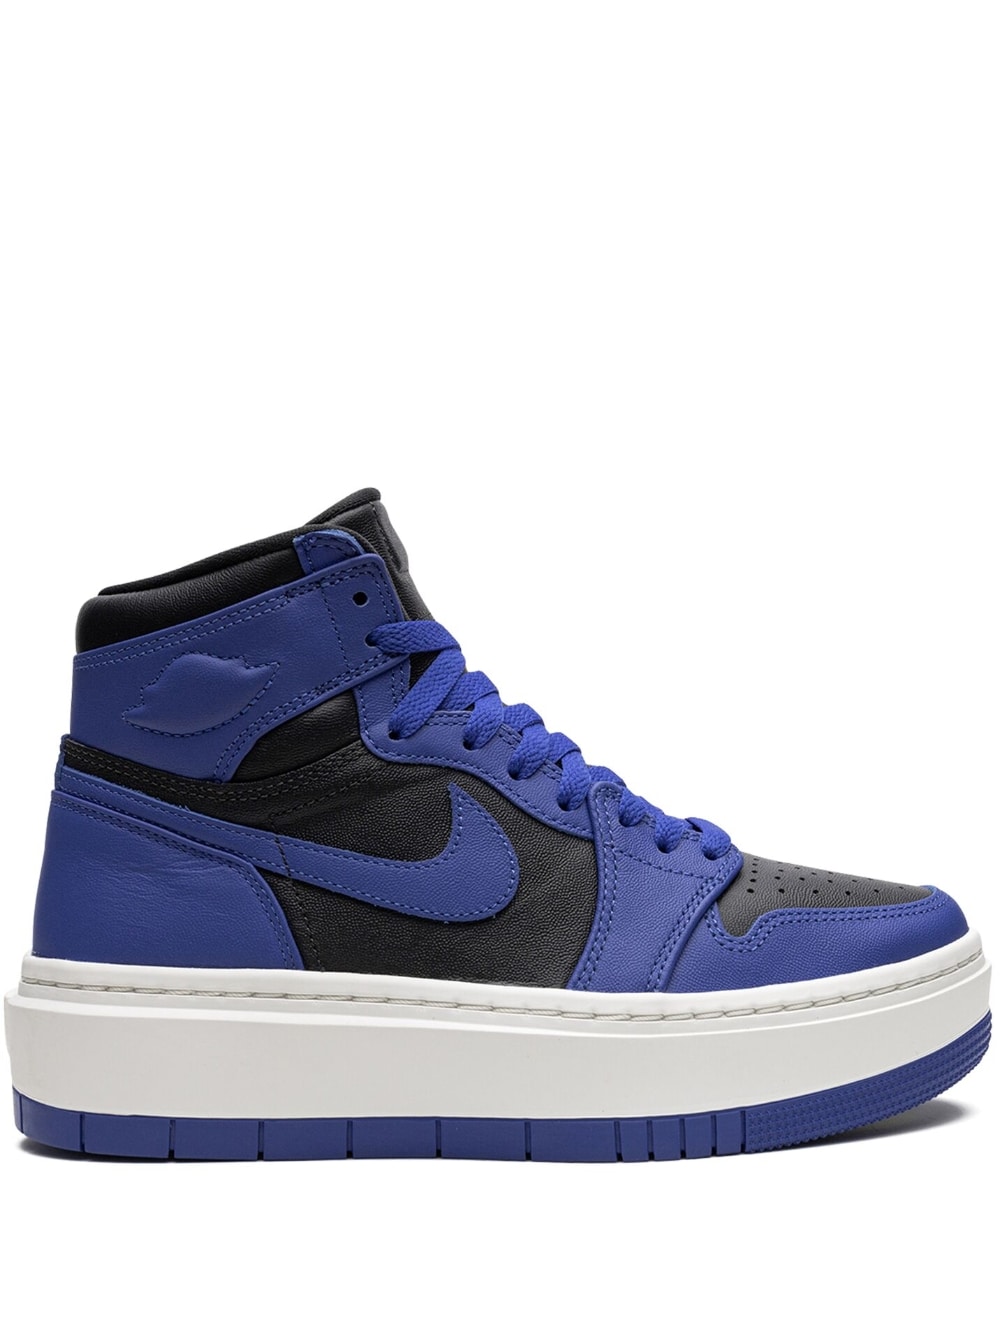 Jordan Air Jordan 1 Elevate High "Game Royal" sneakers - Blue